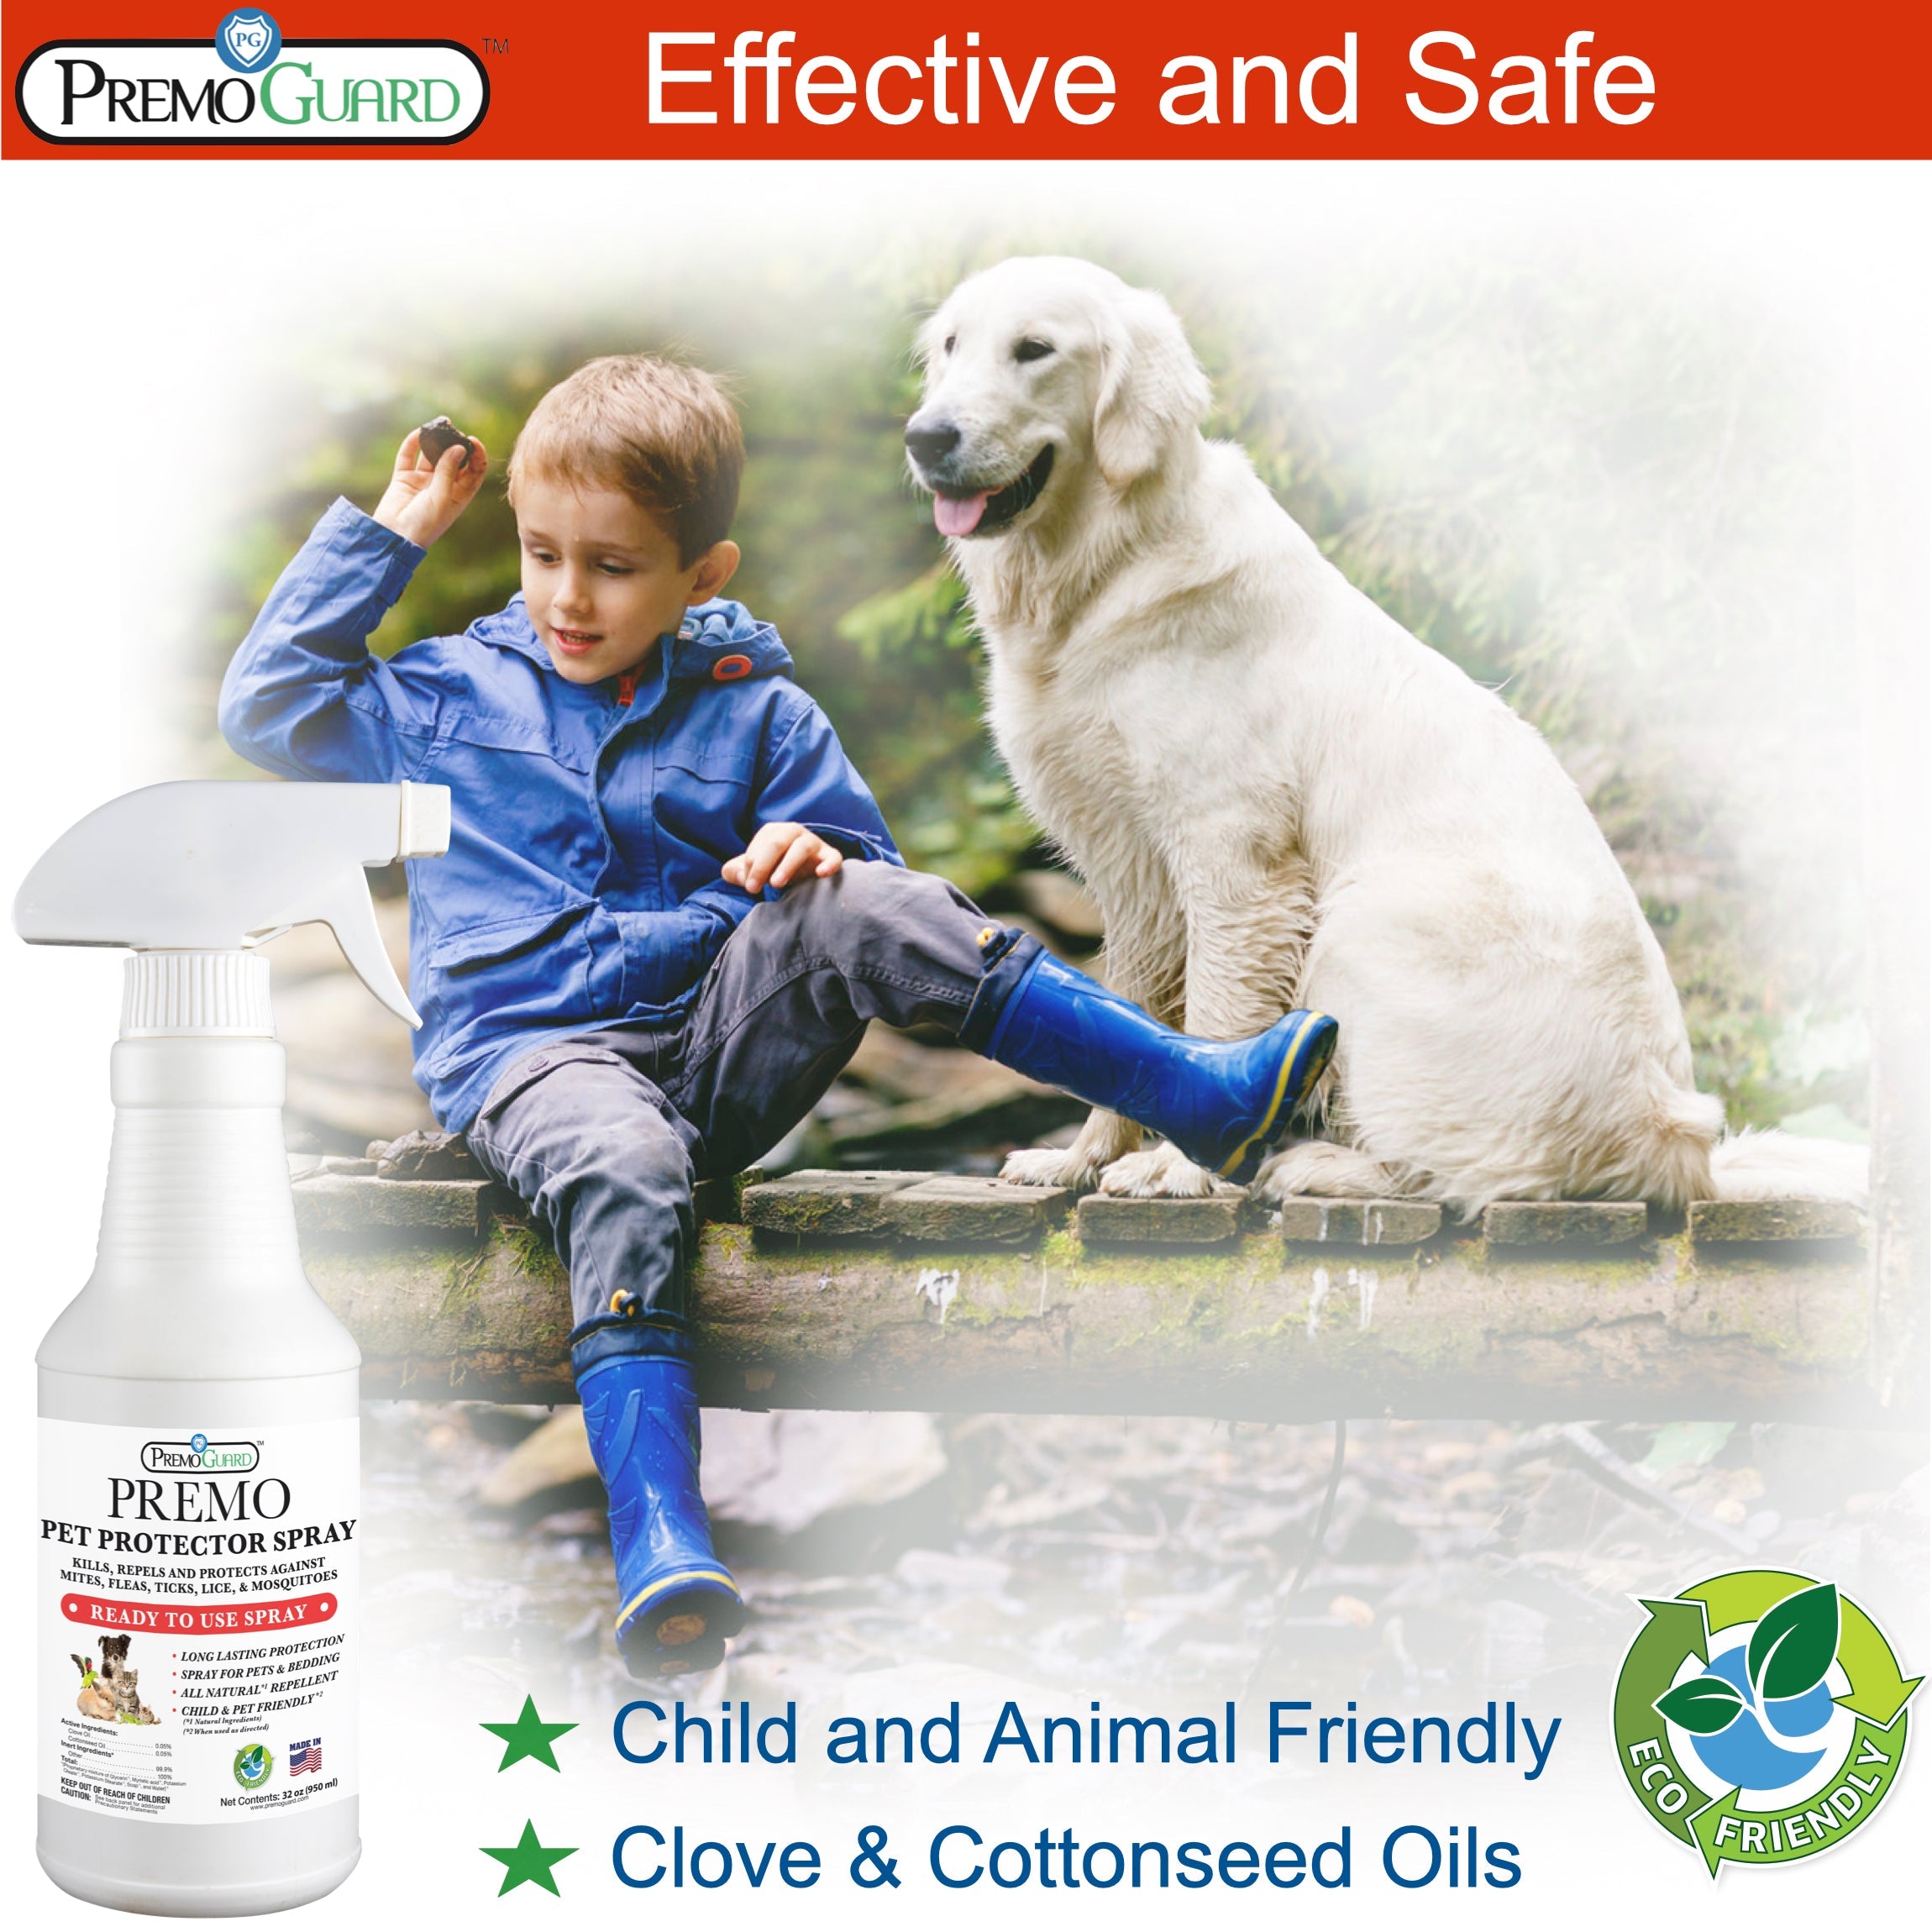 Pet Protector Spray by Premo Guard - 32 oz